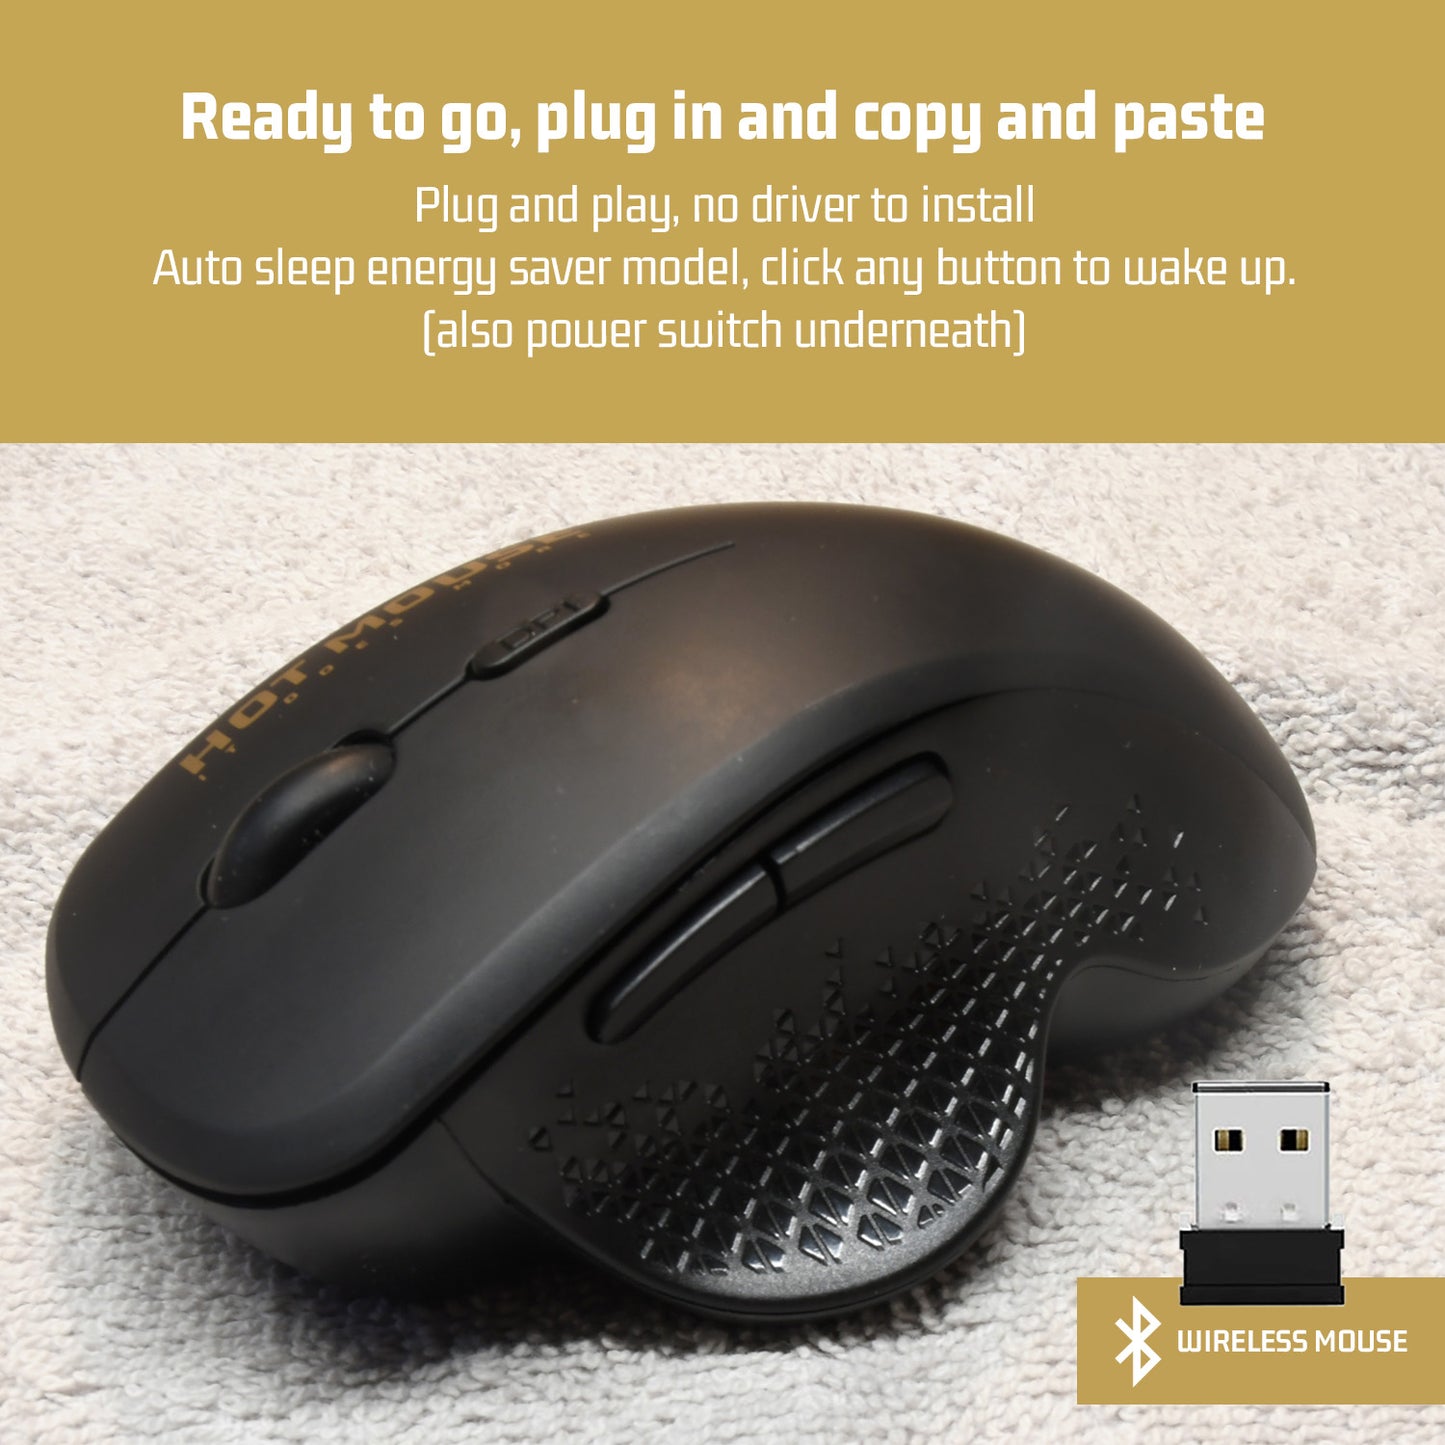 CopyPaste Mouse - Pro Ergonomic Computer Mouse